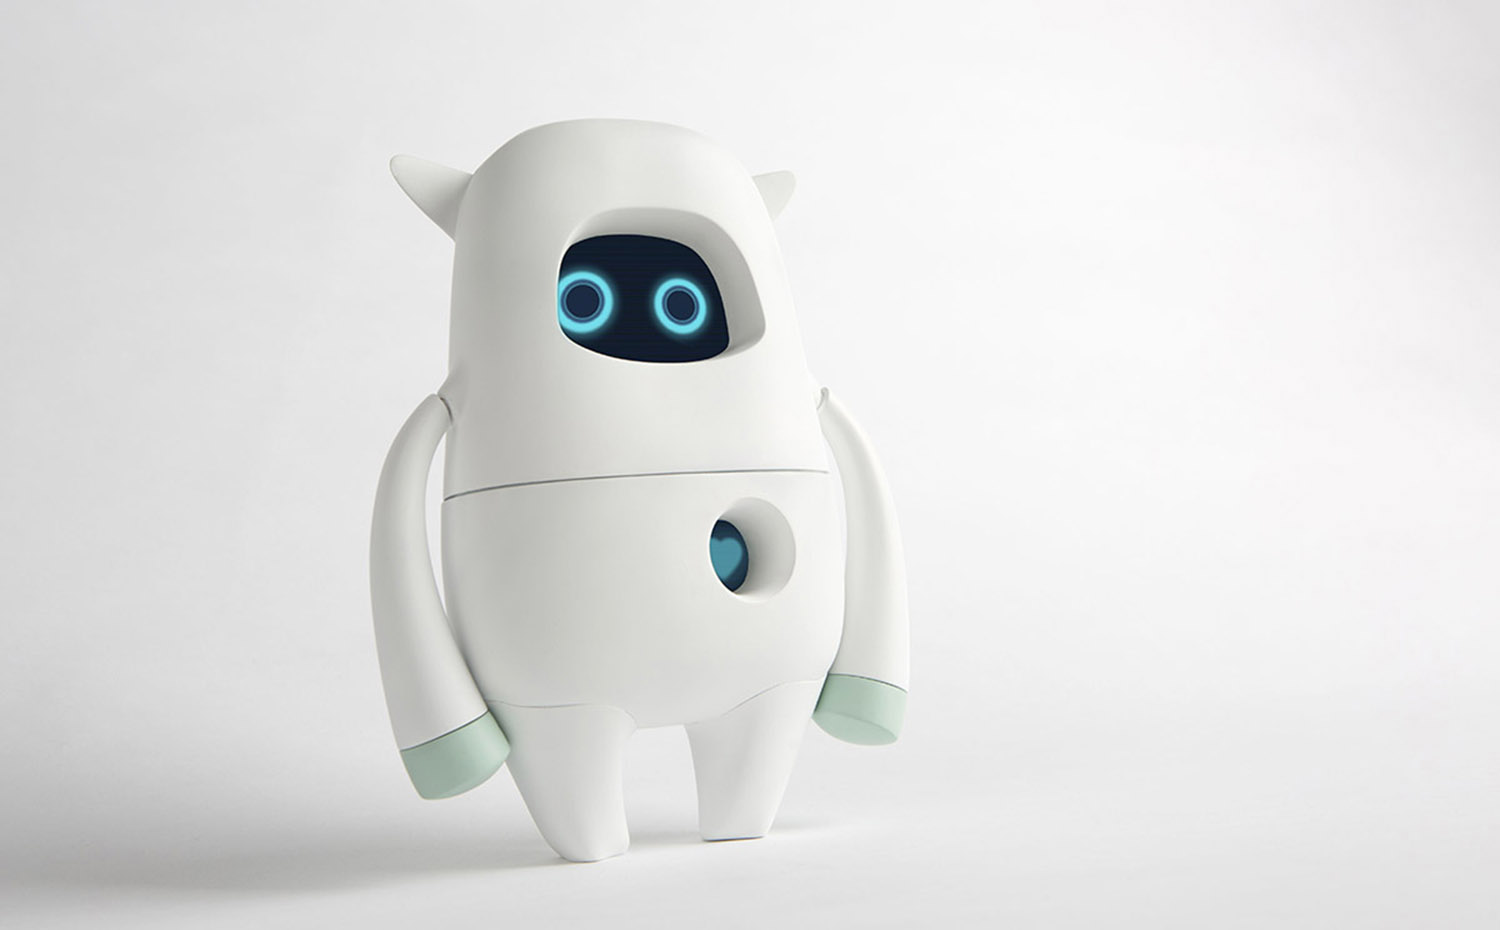 13 aka musiok. Musio K, el "robot amigo" diseñado por la empresa japonesa AKA